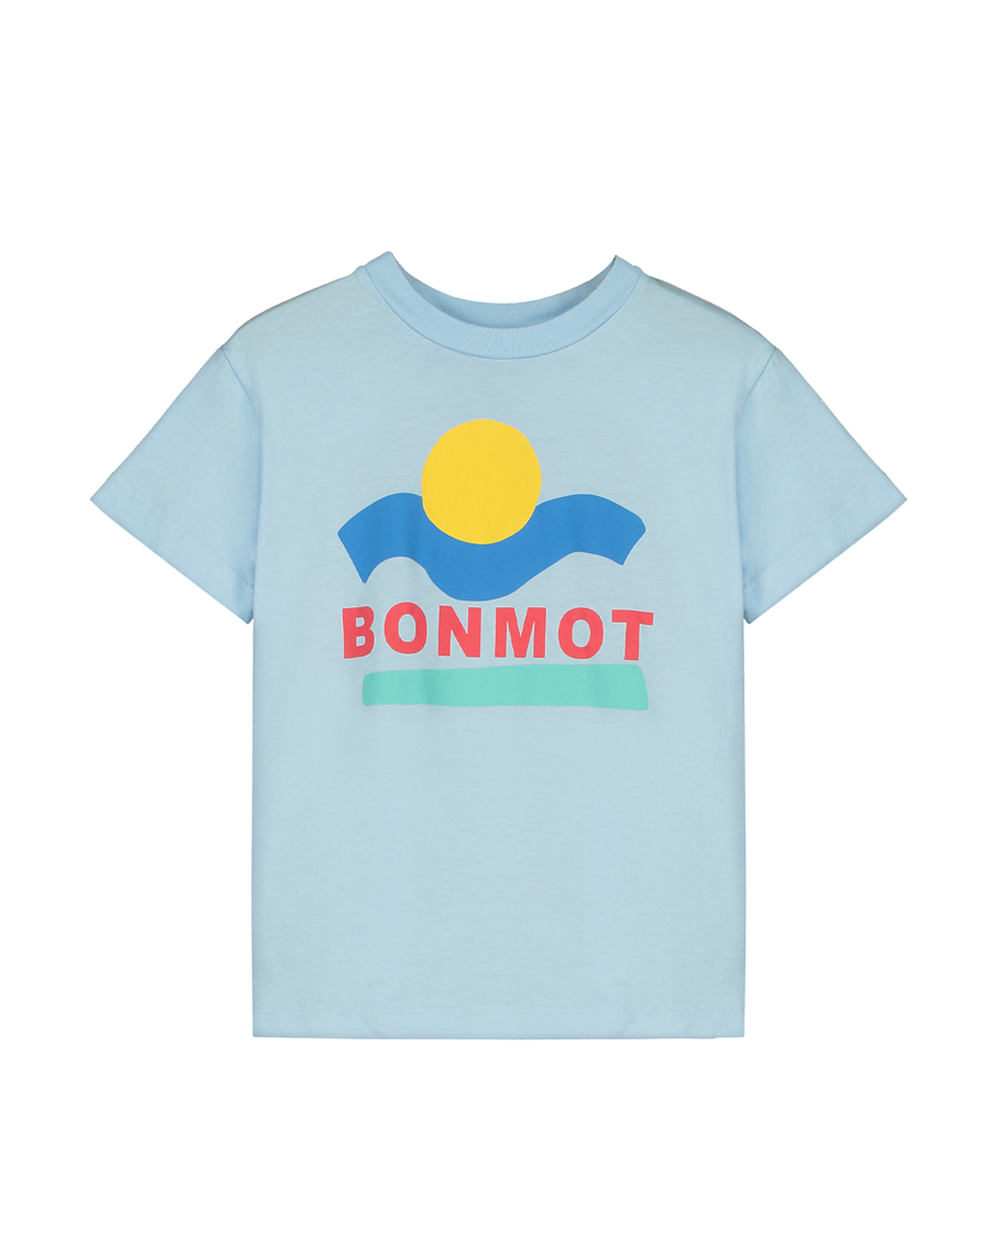 [ BONMOT ] T-shirt bonmot sunset [4-5Y]